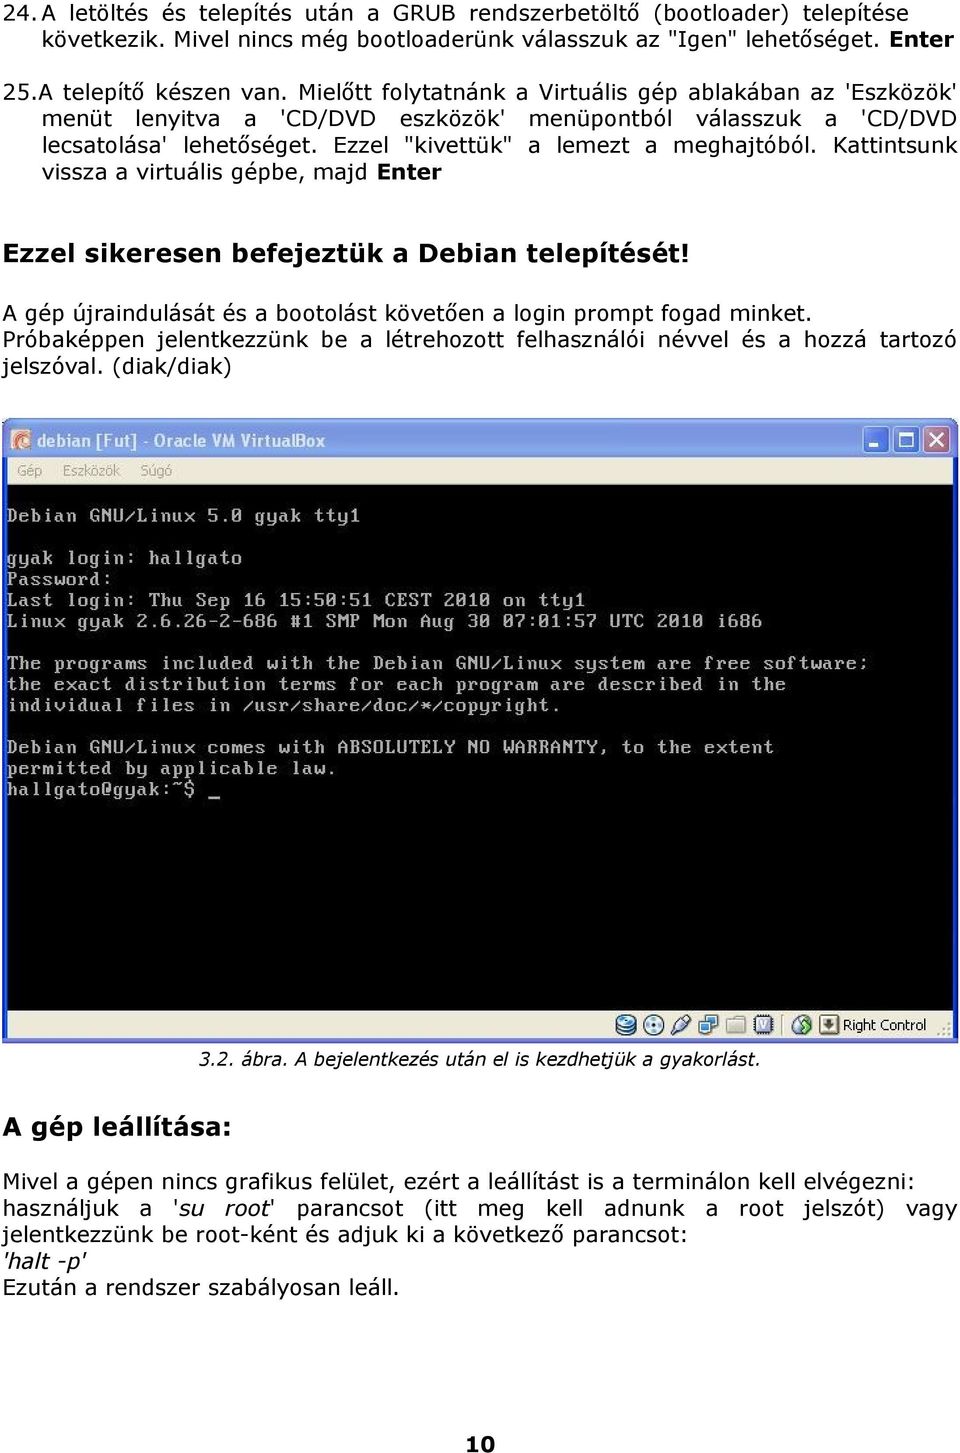 Kattintsunk vissza a virtuális gépbe, majd Enter Ezzel sikeresen befejeztük a Debian telepítését! A gép újraindulását és a bootolást követően a login prompt fogad minket.